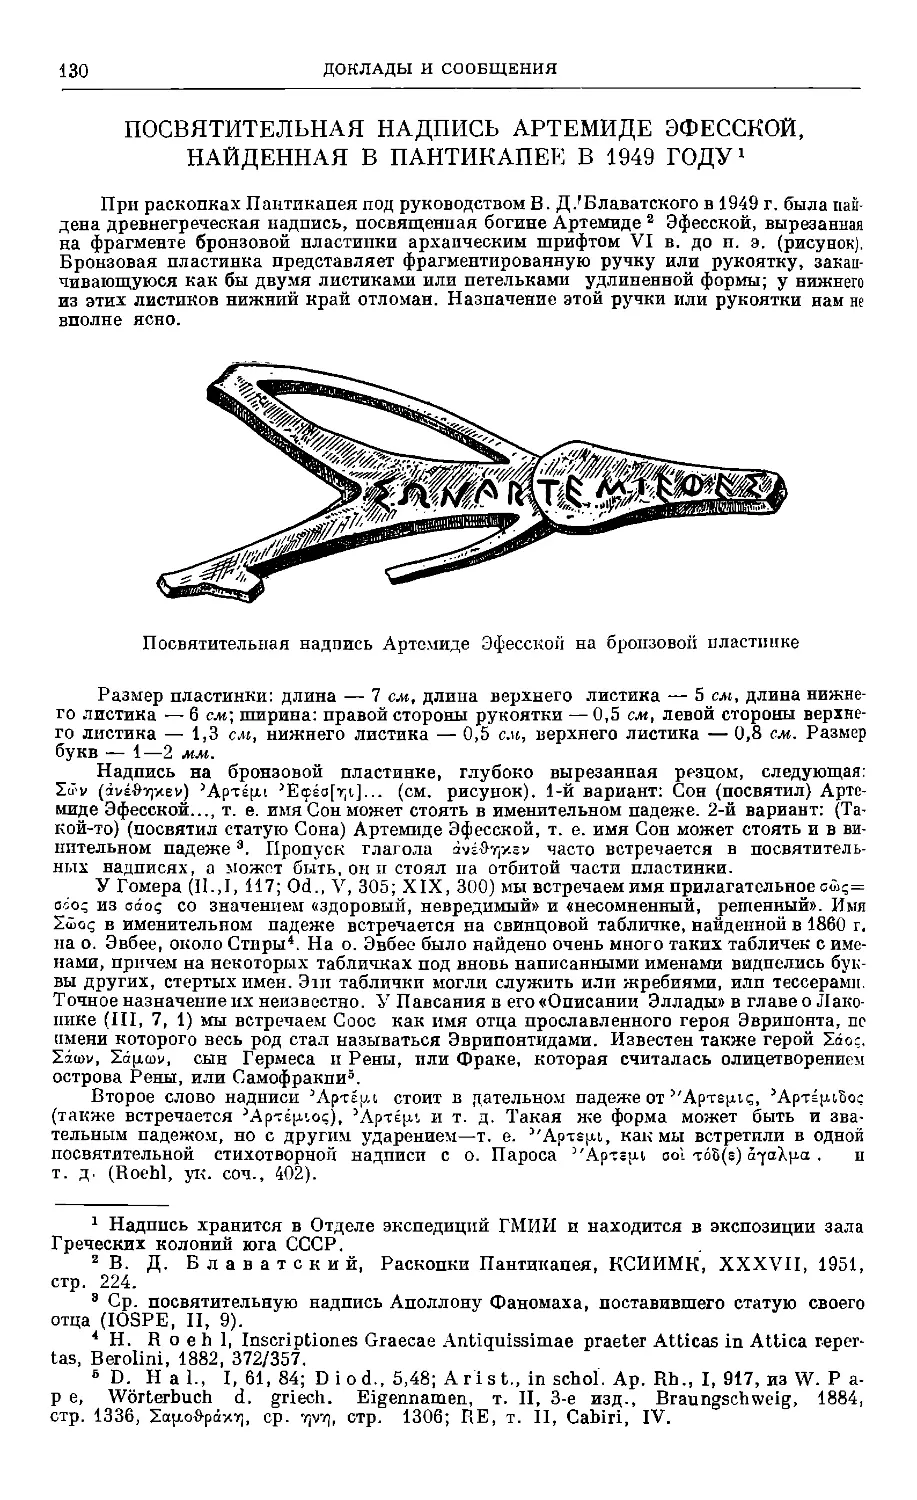 Н. П. Розанова — Посвятительная надпись Артемиде Эфесской, найденная в Пантикапее в 1949 году